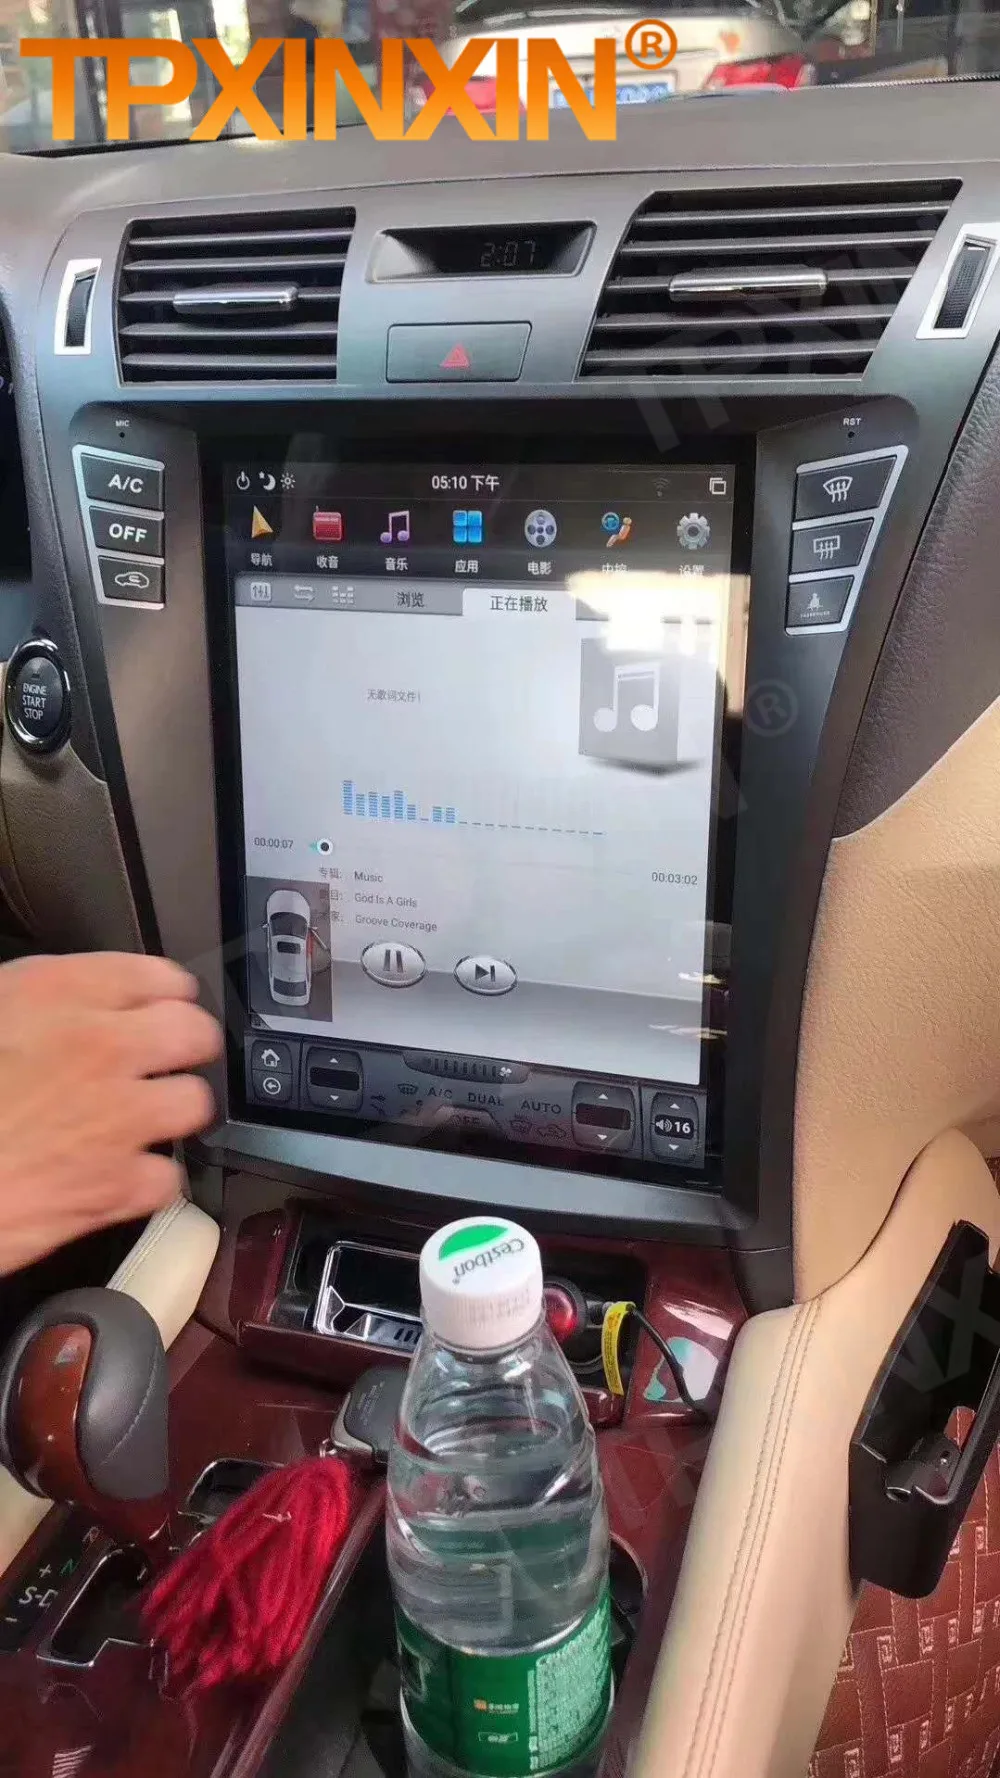 Tesla Képernyő Lexus LS460 2006 2007 2008 2009 2010 2011 2012 Android Videó Lejátszó Auto Audio Sztereó Rádió Vevő Egység